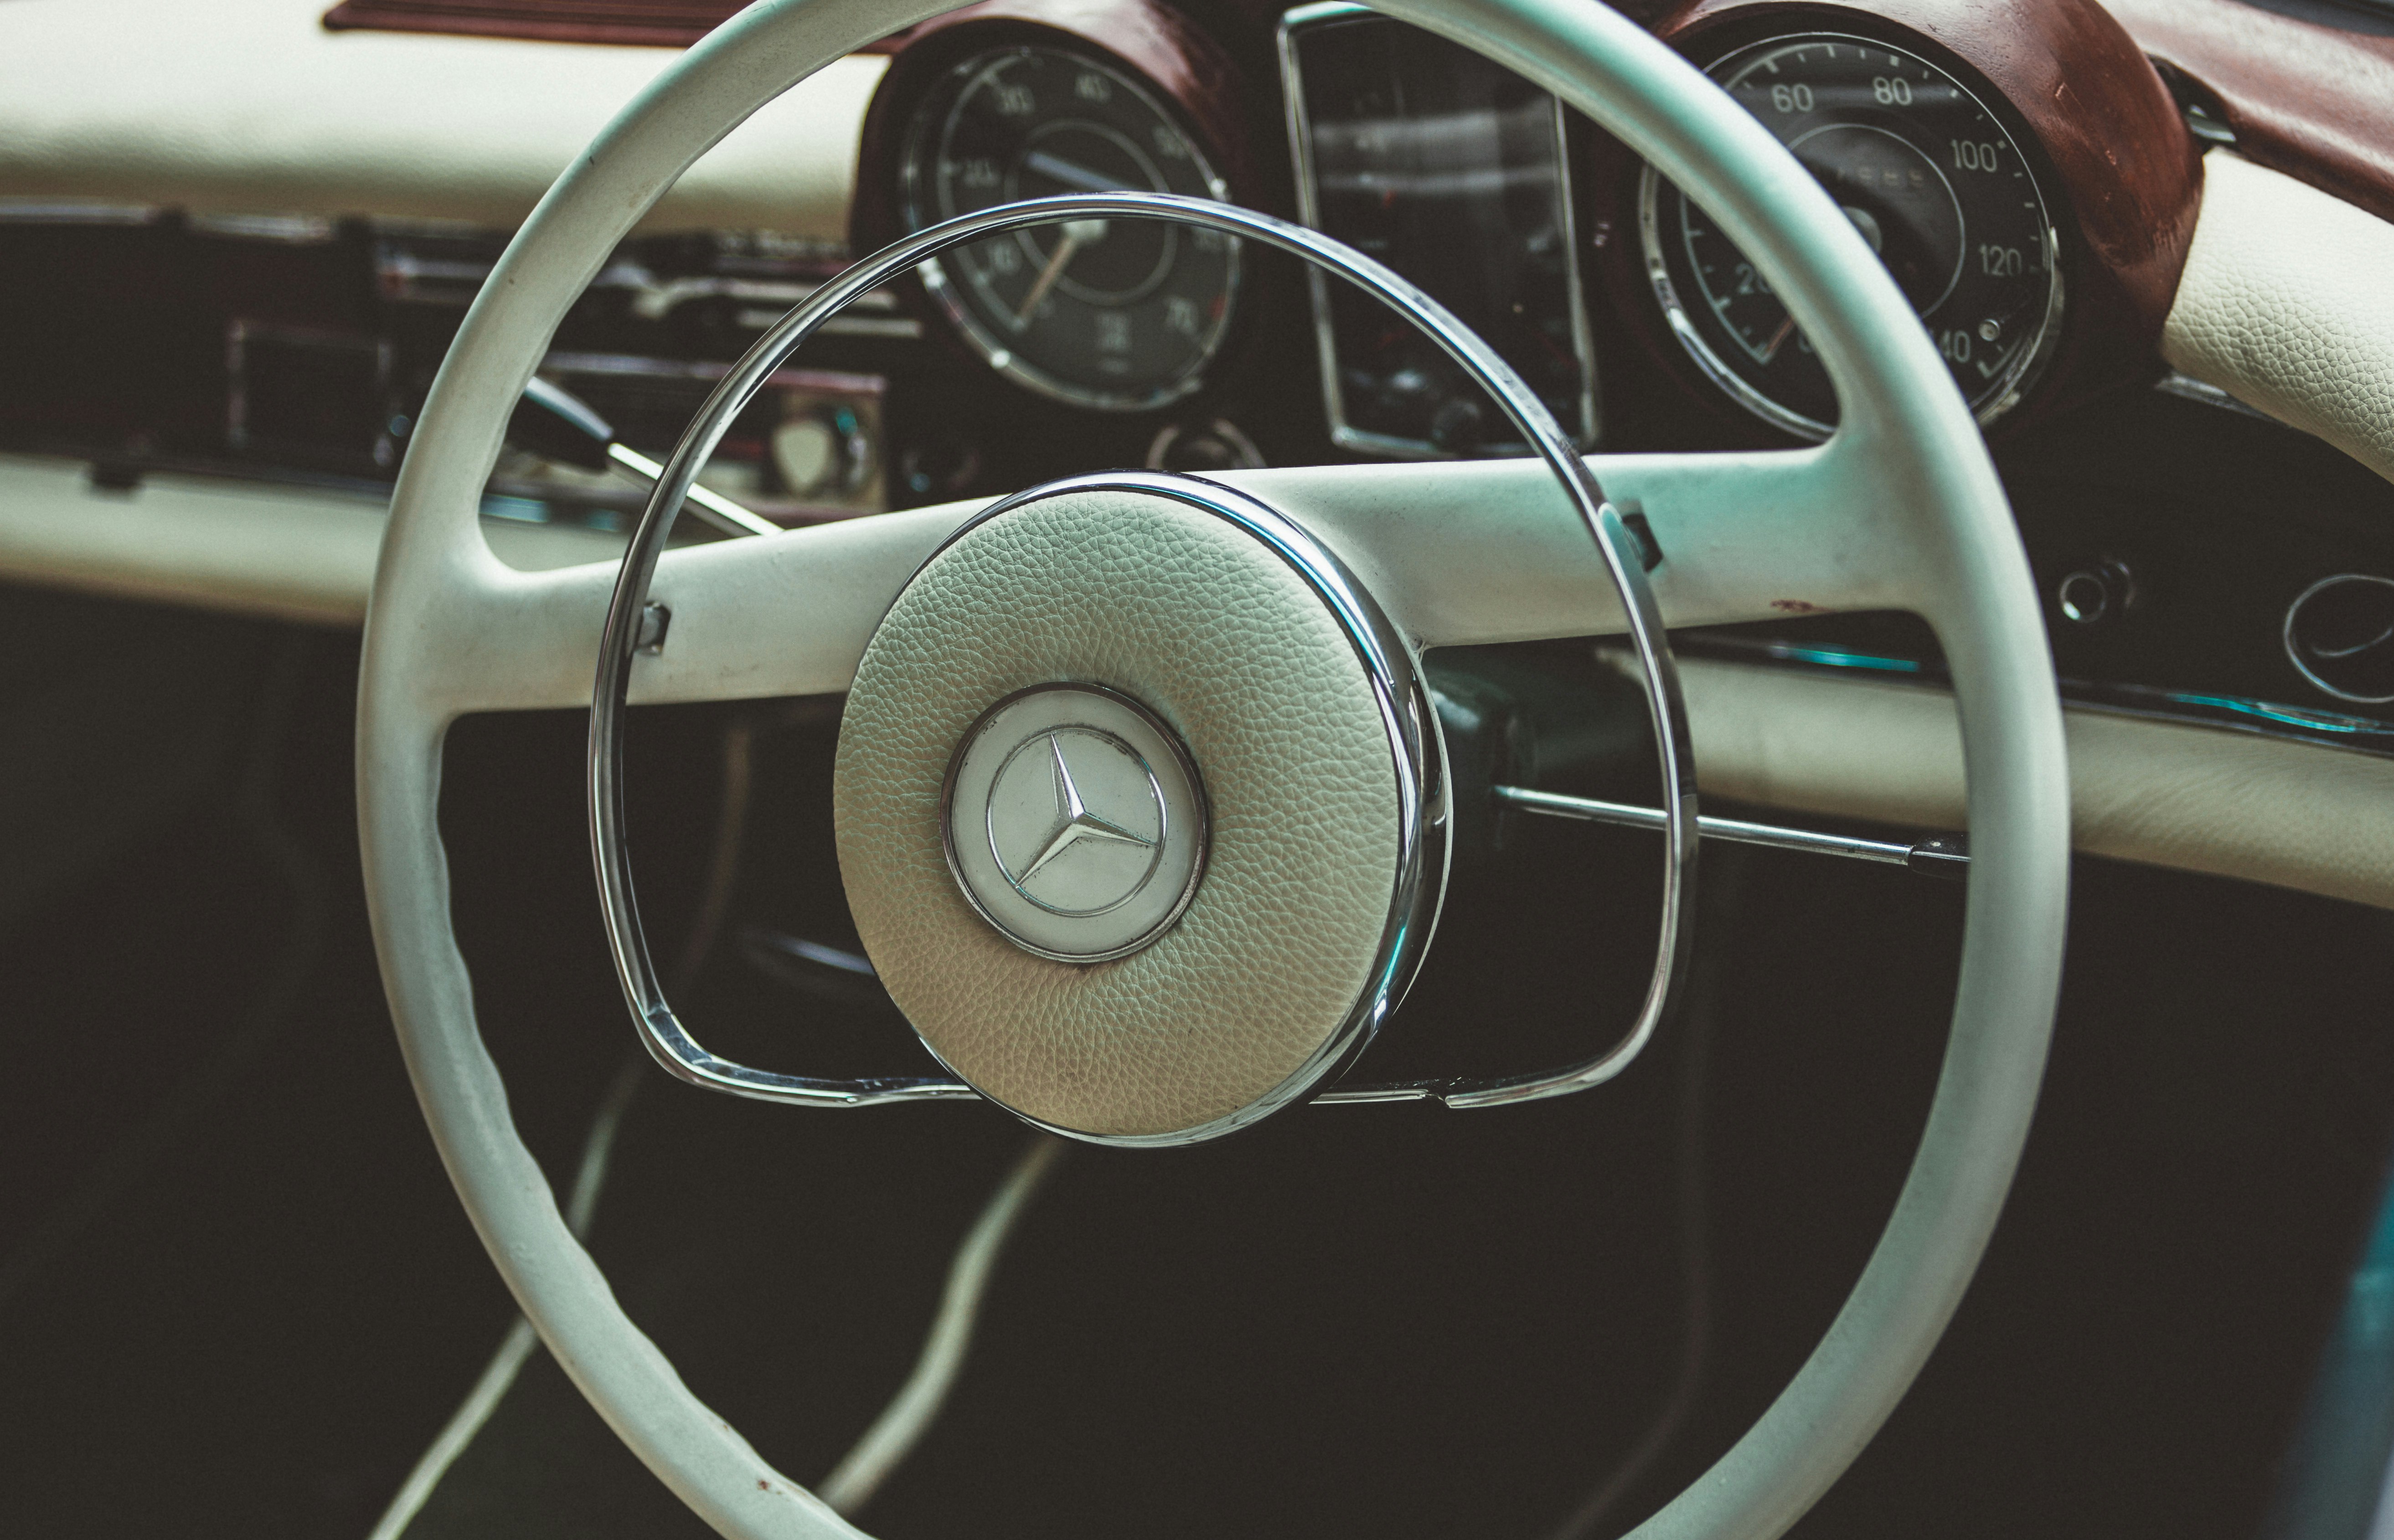 teal Mercedes-Benz vehicle steering wheel